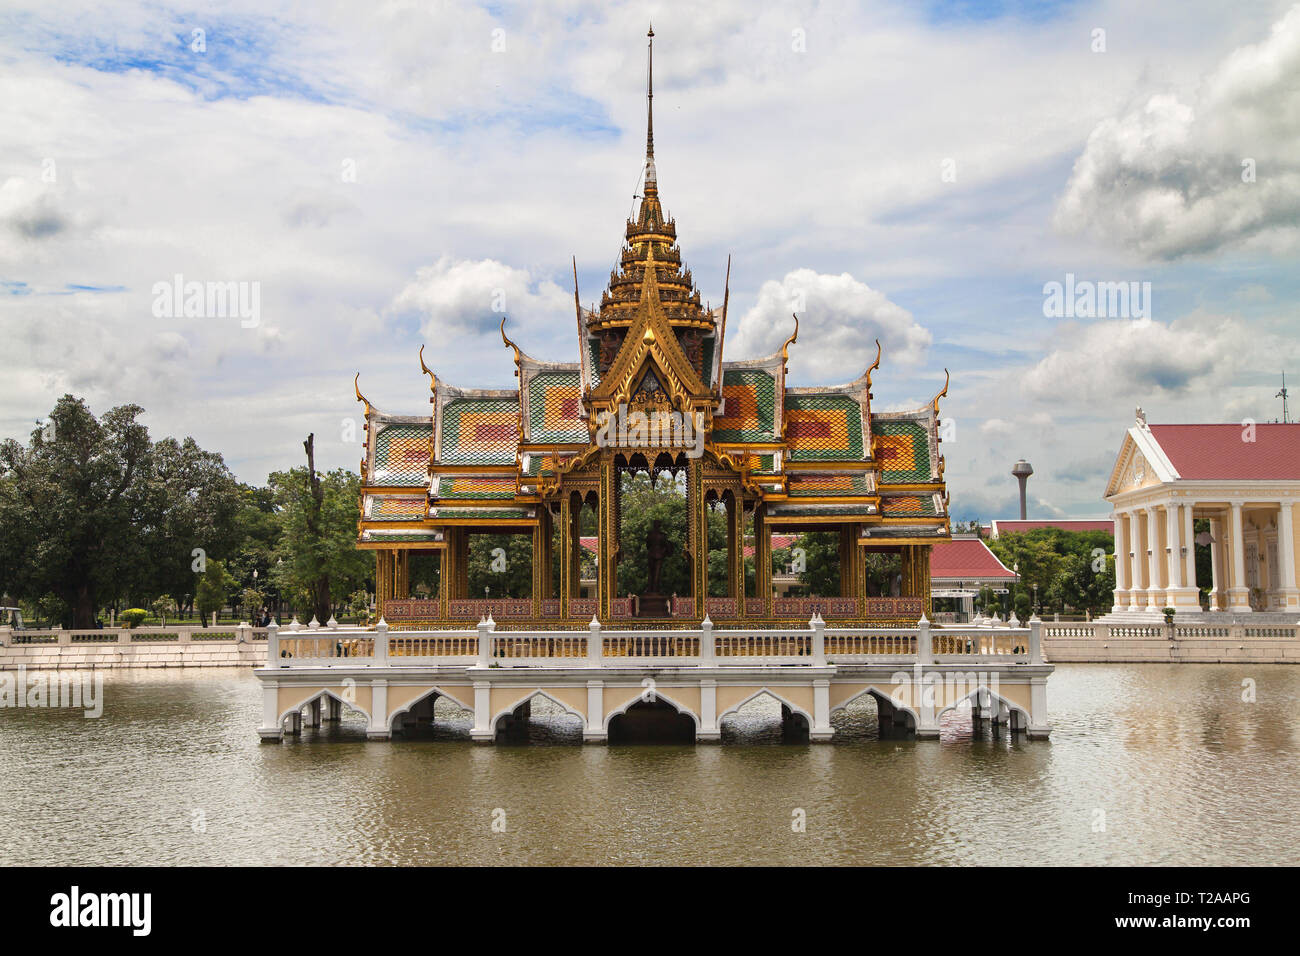 Floating Pavilion at Bang Pa-In Palace, Ayutthaya, Thailand. Stock Photo